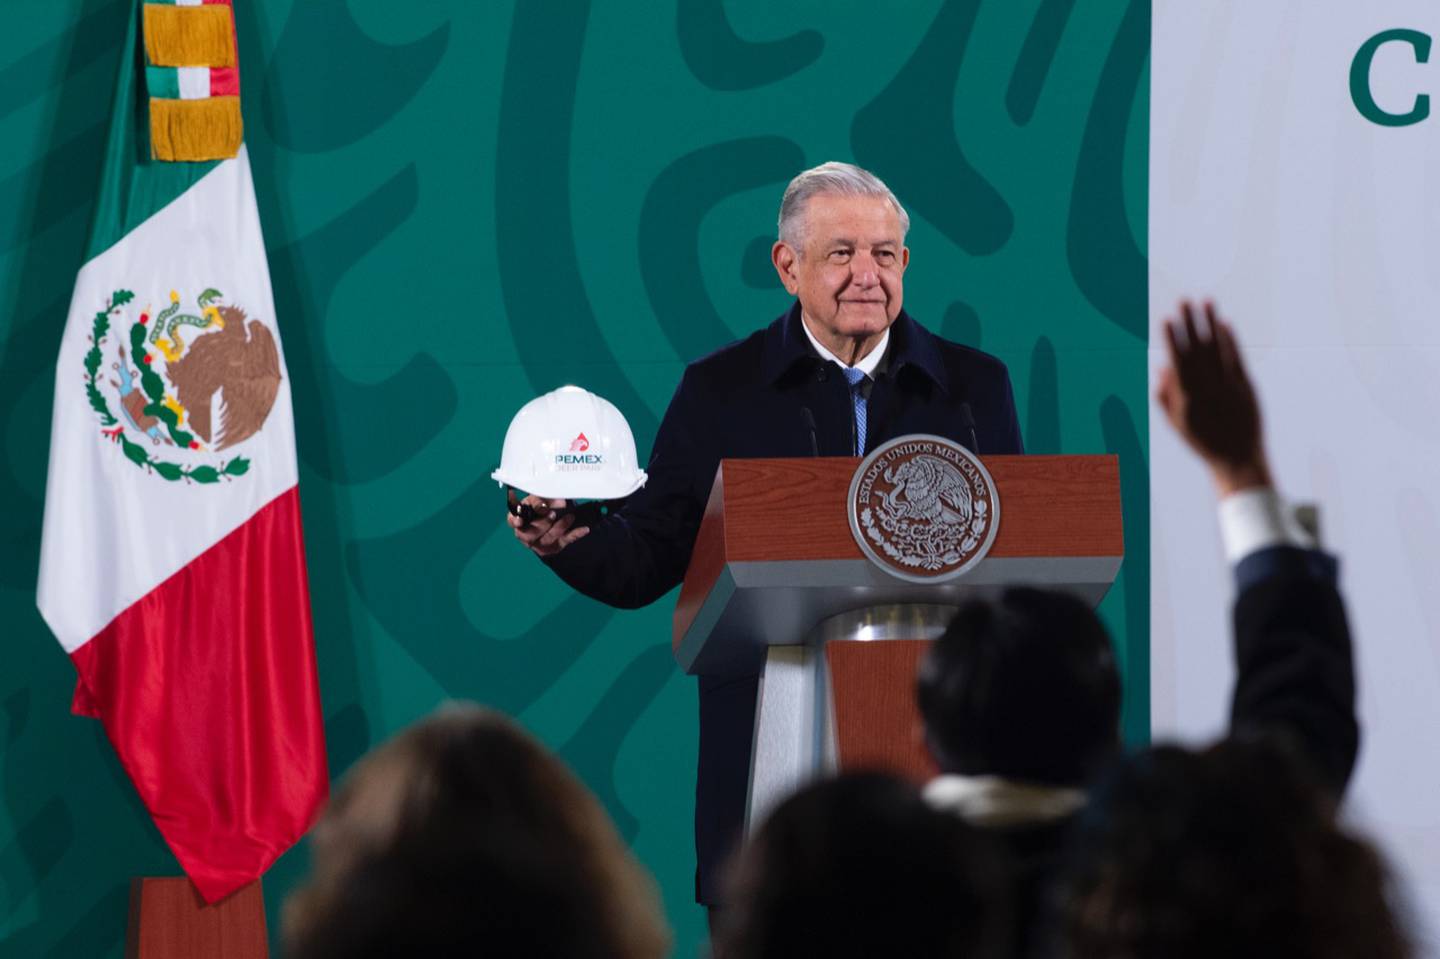 El presidente de México, Andrés Manuel López Obrador (AMLO) sostiene un casco de Pemex de la refinería Deer Park en Texas, Estados Unidos, durante una conferencia de prensa.